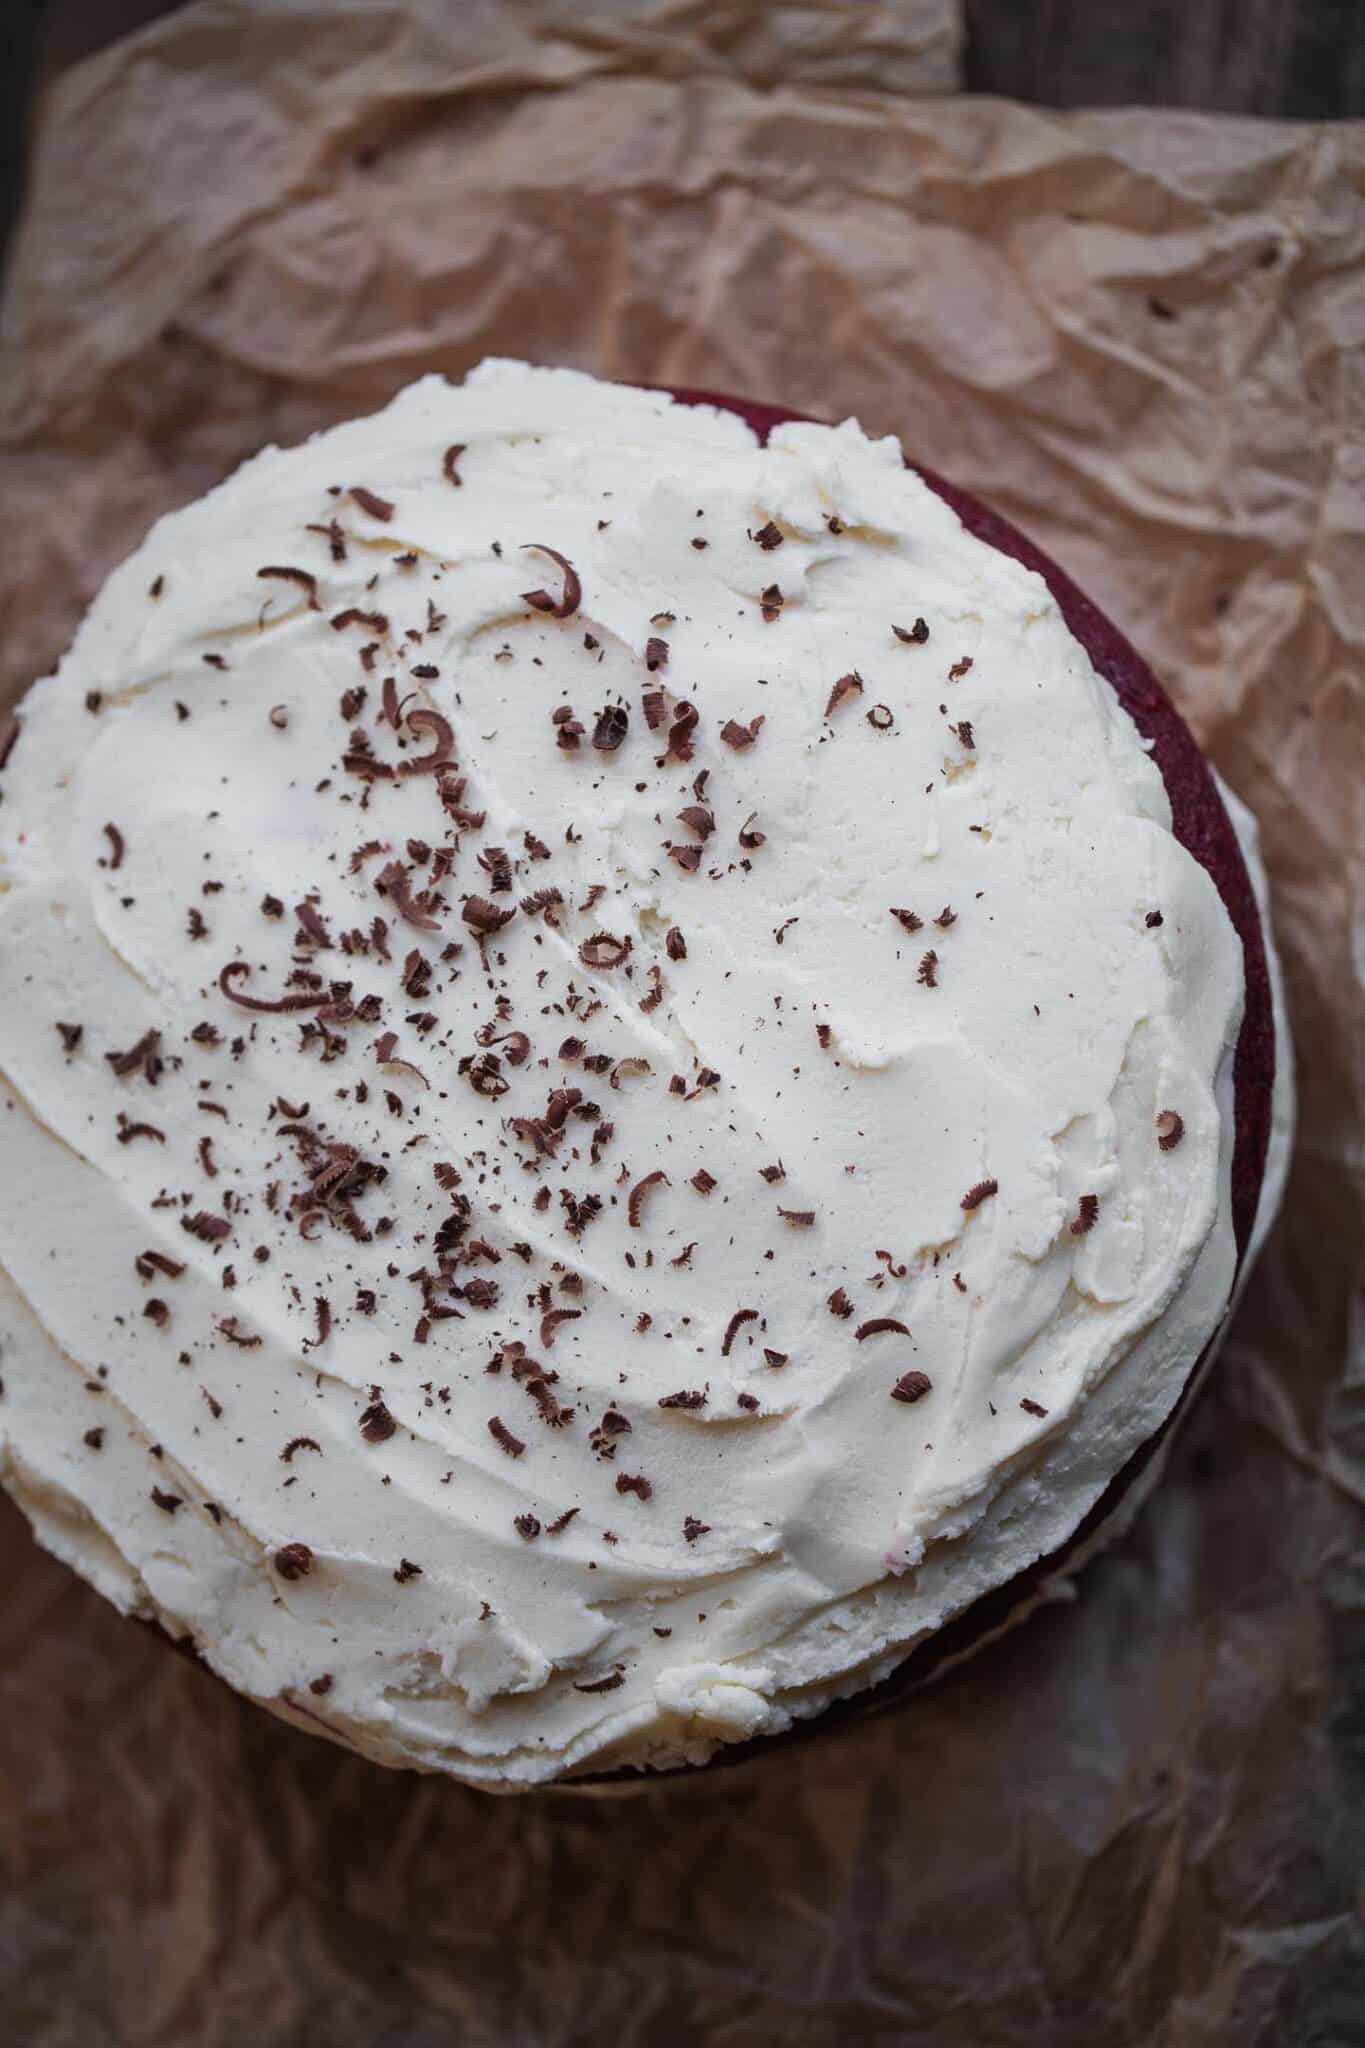  vegan red velvet cake covered in vegan cream cheese frosting